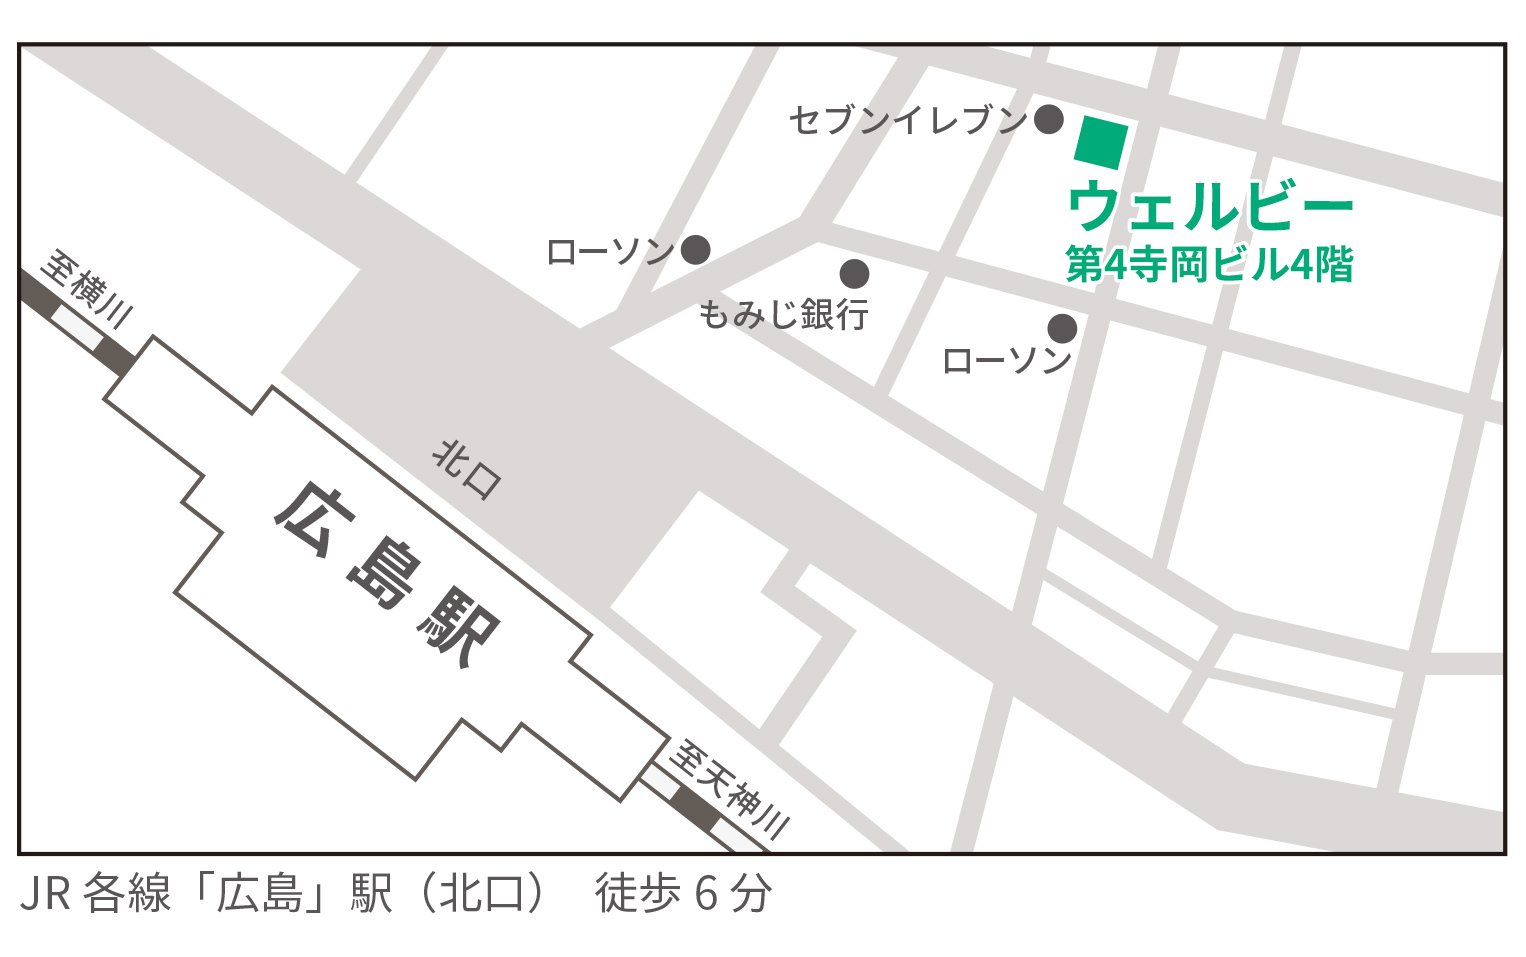 ウェルビー広島第3センター地図